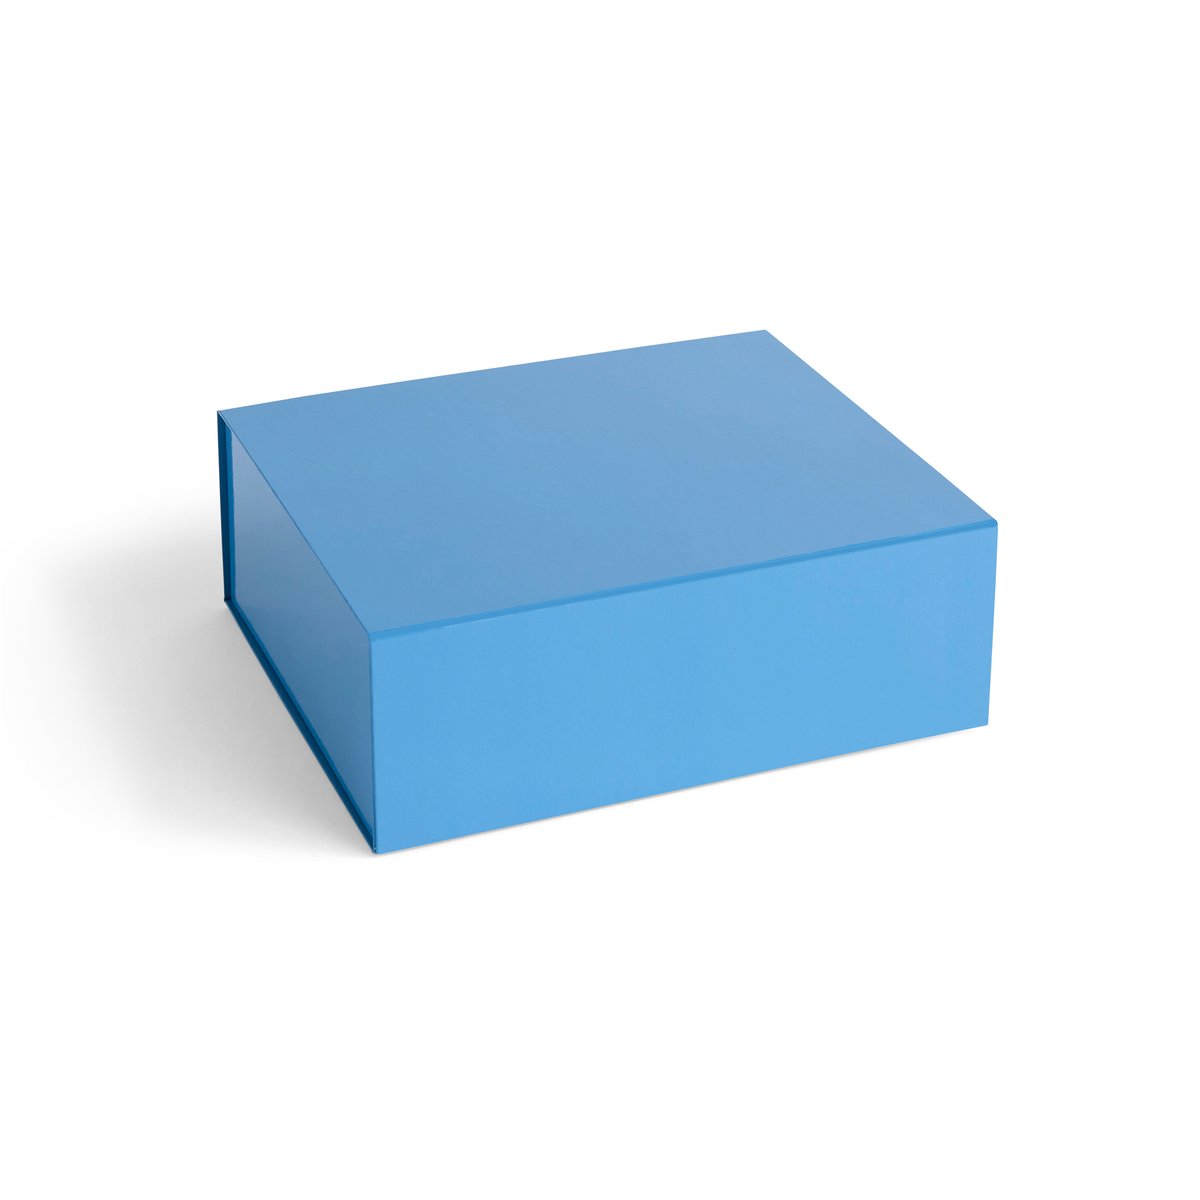 HAY Colour Storage M kannellinen laatikko 29,5×35 cm Sky blue